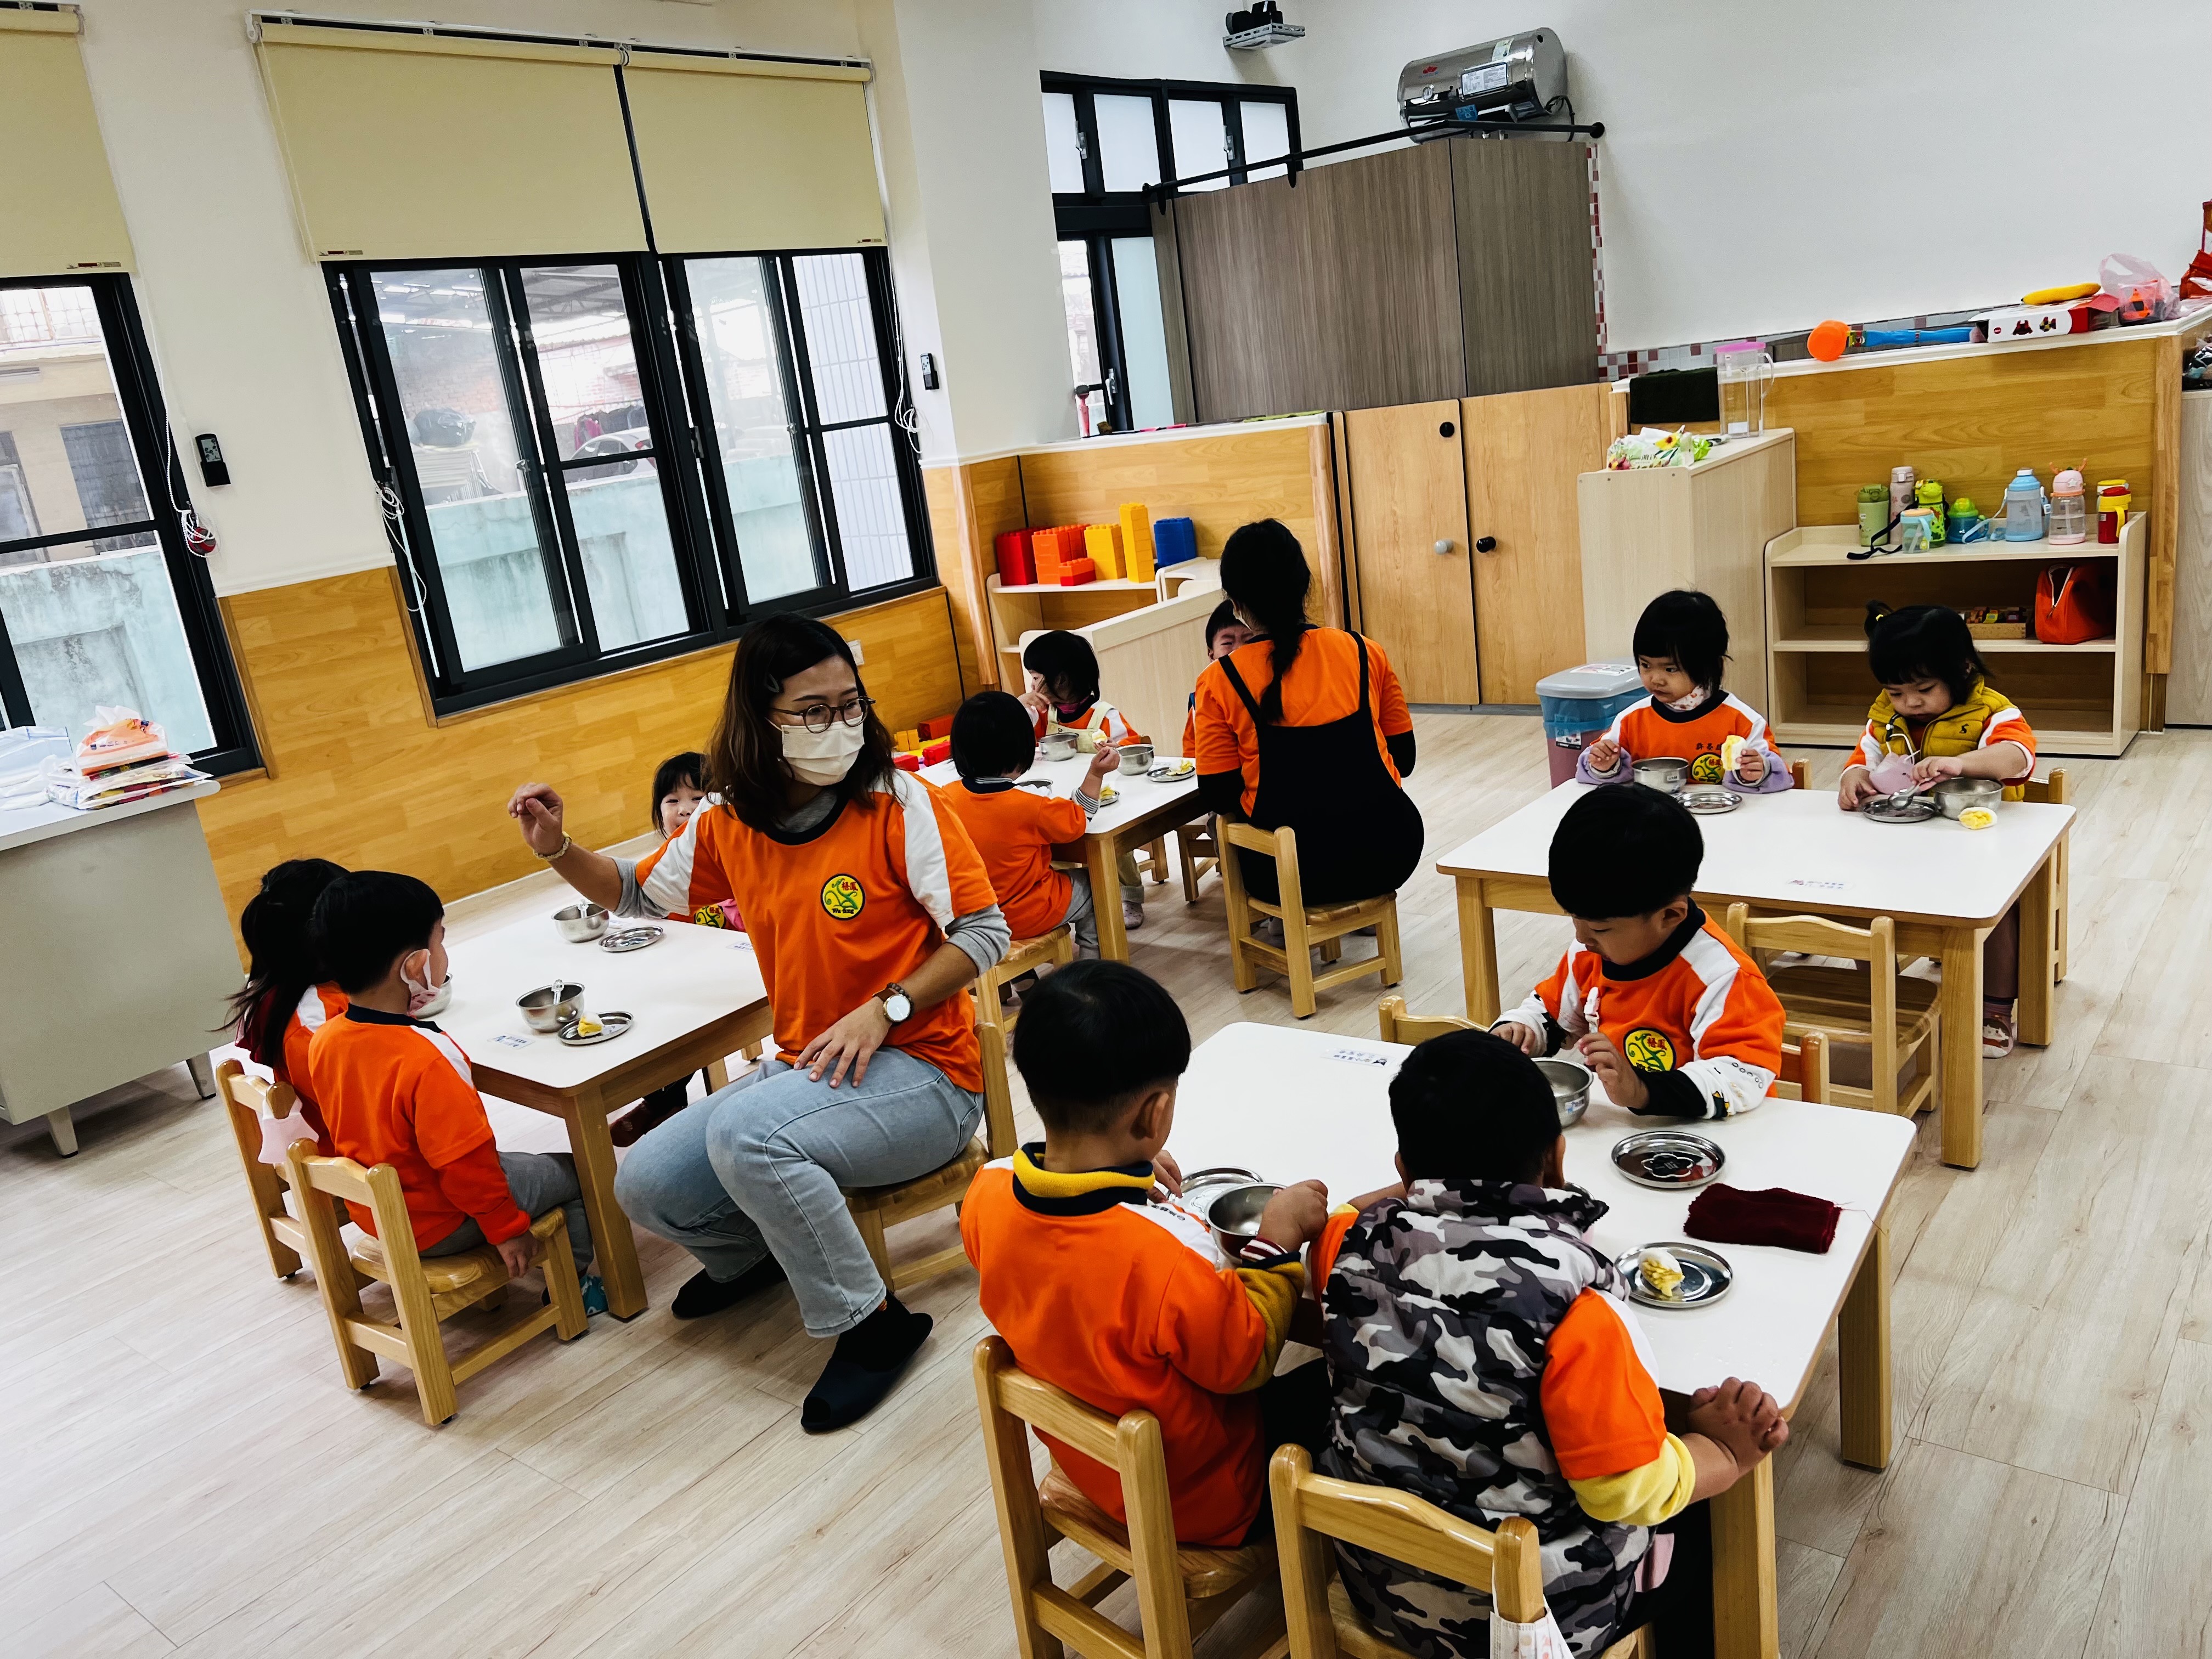 圖為梧鳳非營利幼兒園新增設的「小荳荳幼幼班」上課情景。